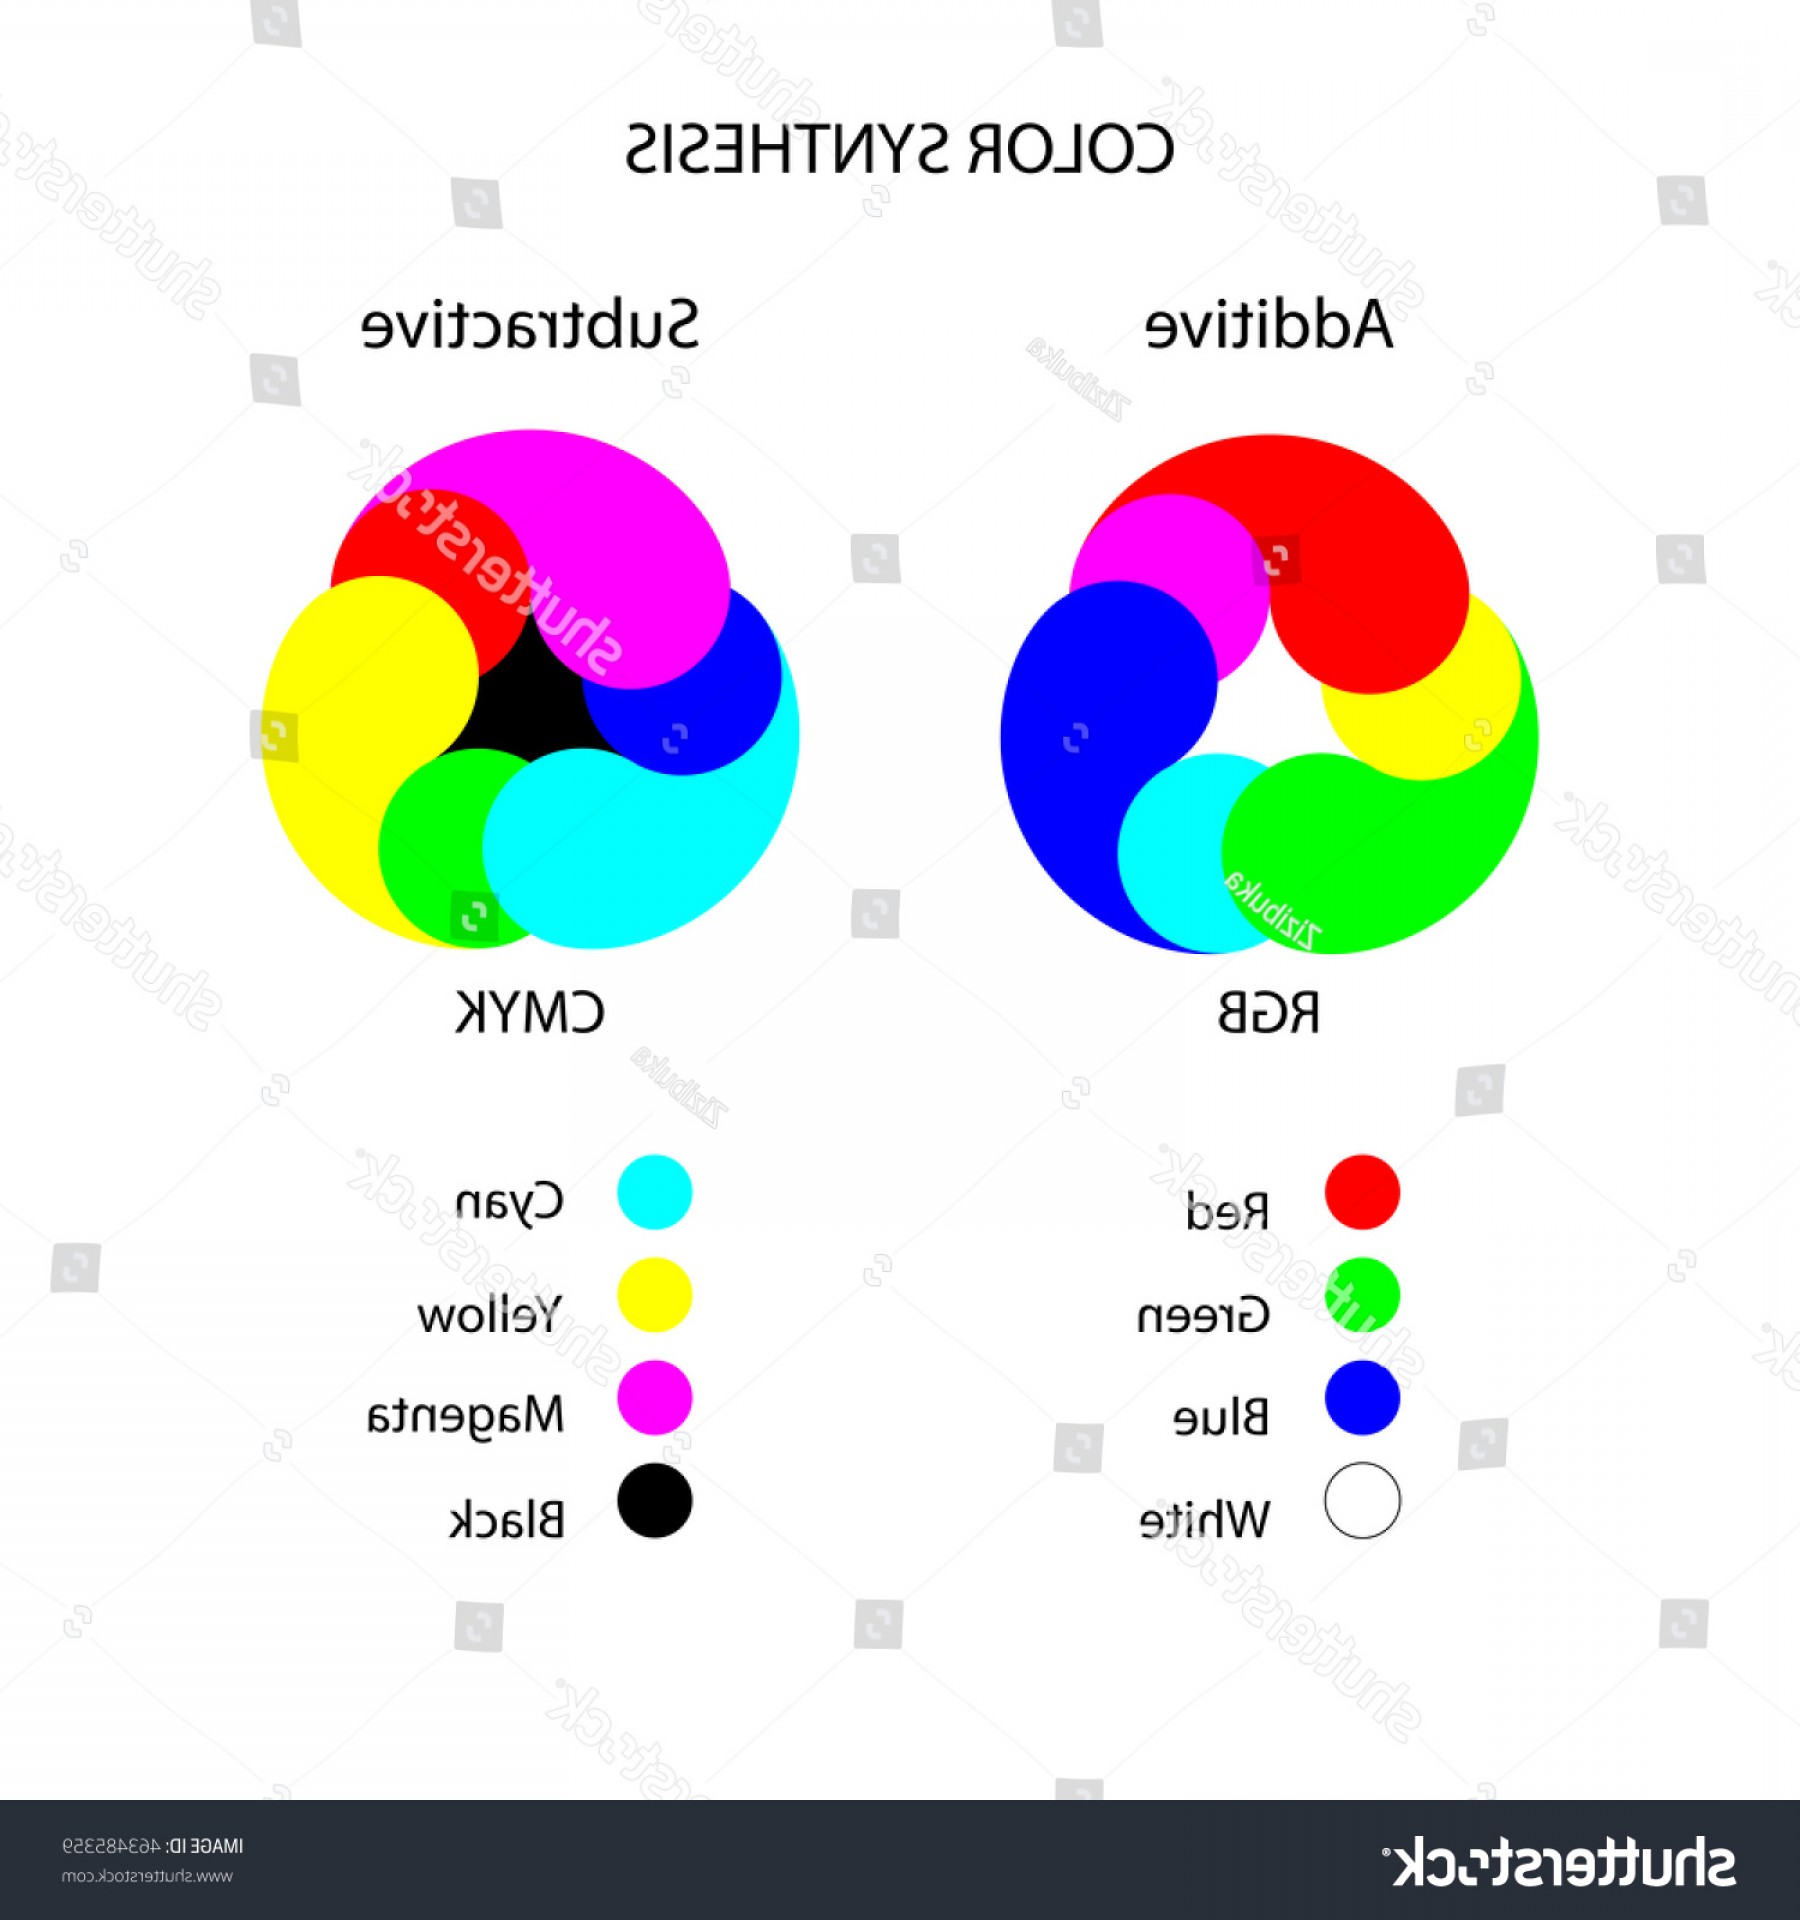 ¿Qué modo de color es Svg?